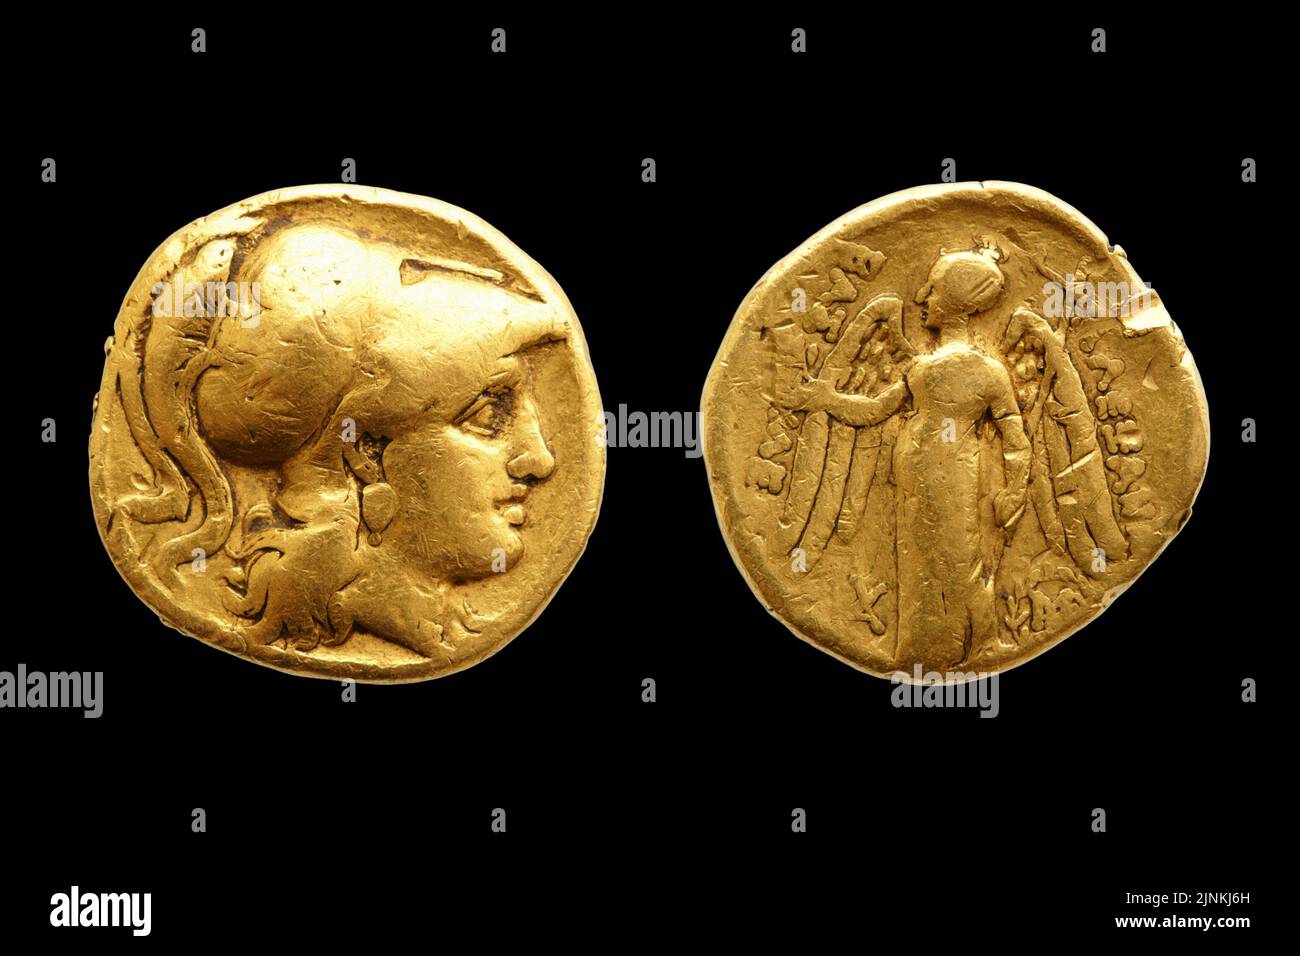 Dos caras de una antigua moneda de oro griega con Alejandro Magno aislado sobre fondo negro. Foto de stock